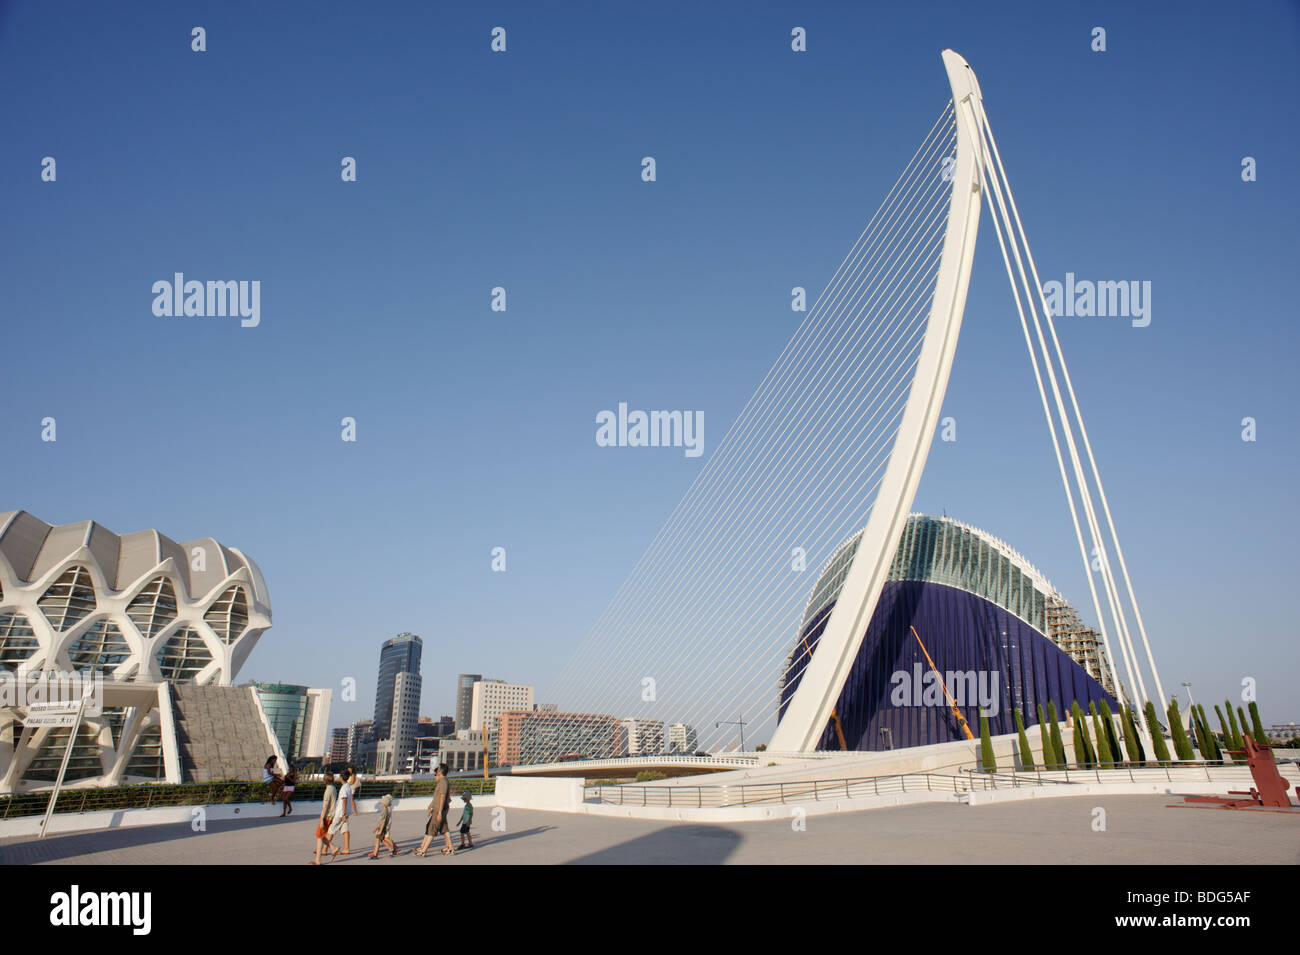 Assut d ' or Brücke (aka Serreria) in Valencia, die vom Architekten Santiago Calatrava entworfen. Spanien Stockfoto